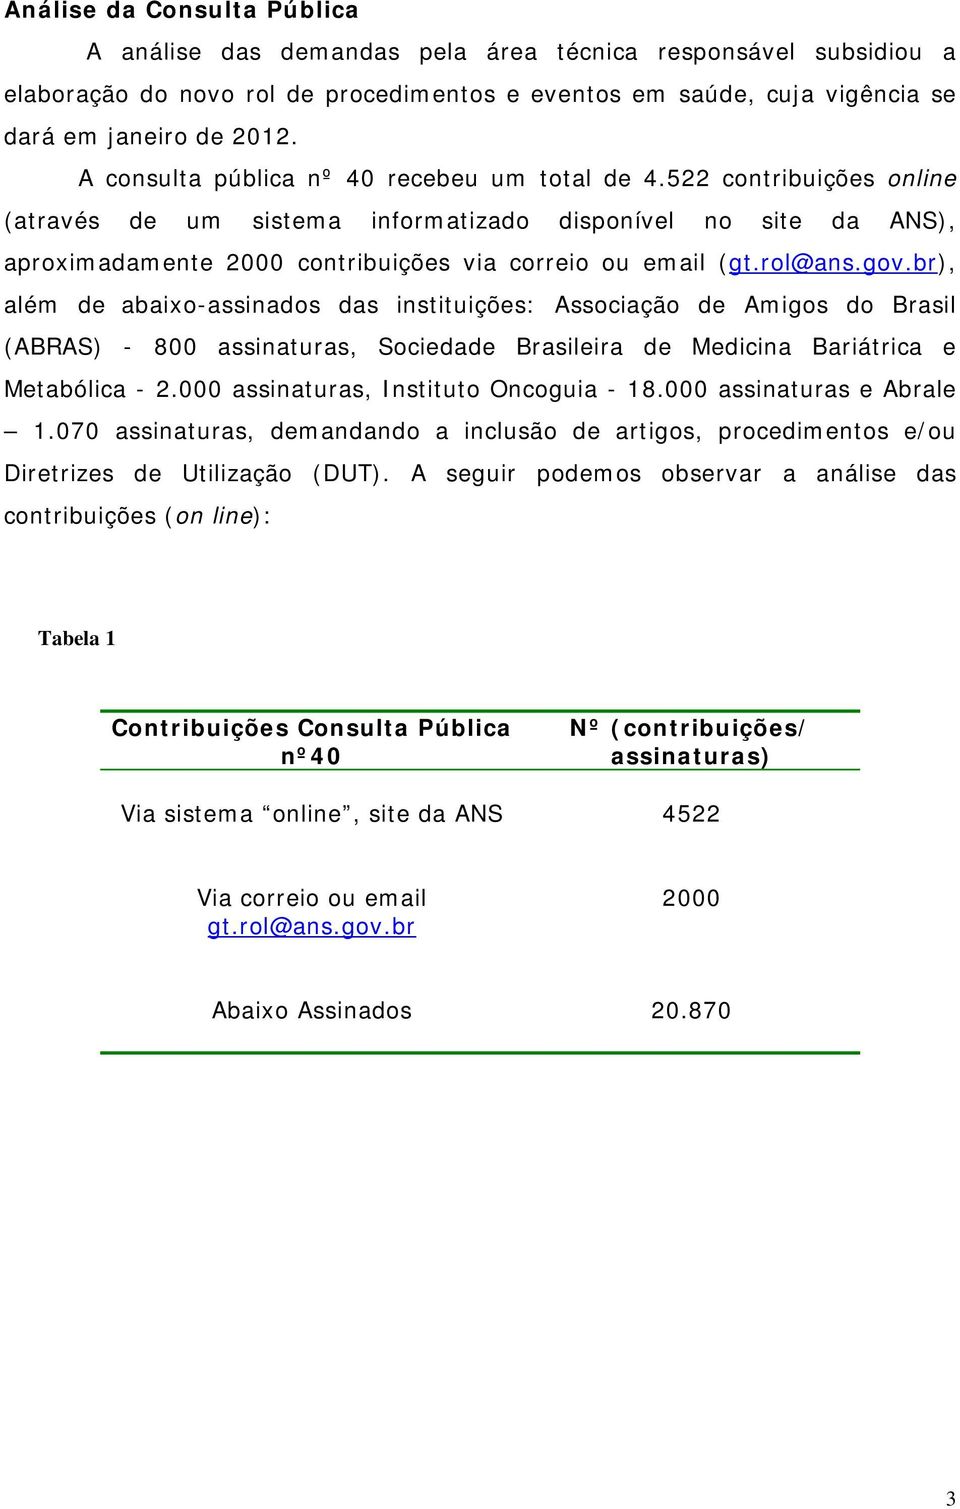 rol@ans.gov.br), além de abaixo-assinados das instituições: Associação de Amigos do Brasil (ABRAS) - 800 assinaturas, Sociedade Brasileira de Medicina Bariátrica e Metabólica - 2.